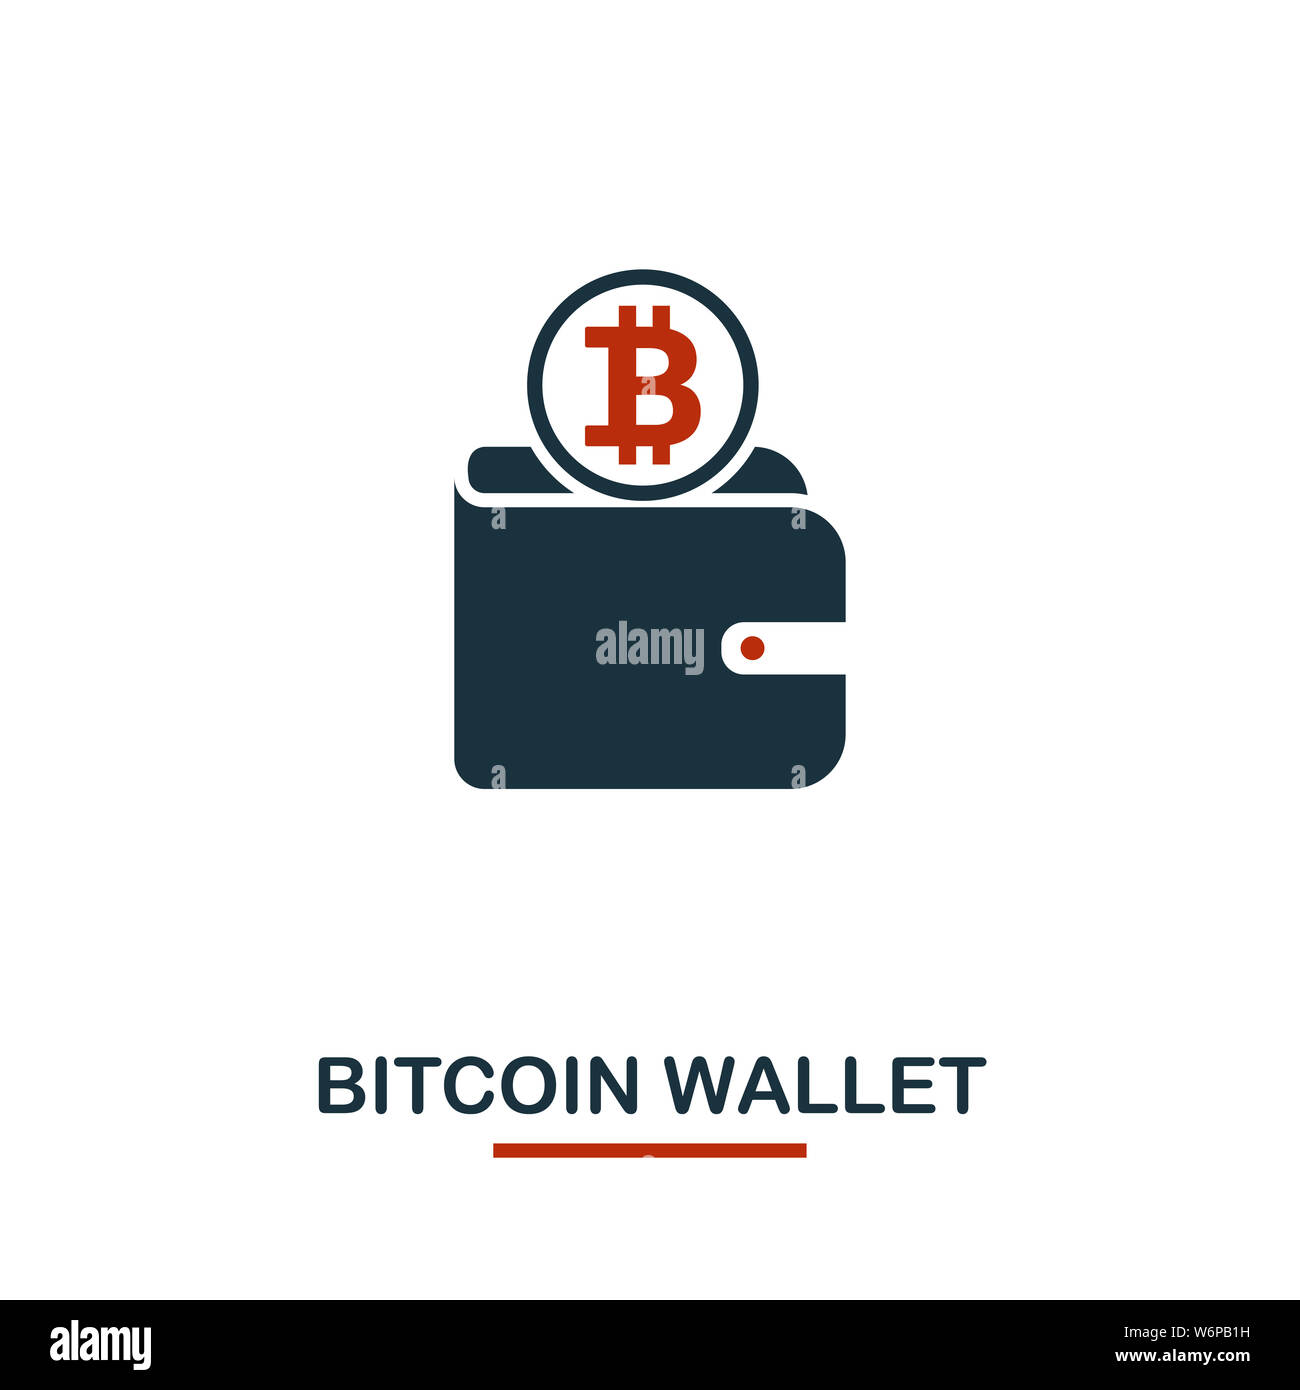 Bitcoin wallets Banque de photographies et d'images à haute résolution -  Alamy